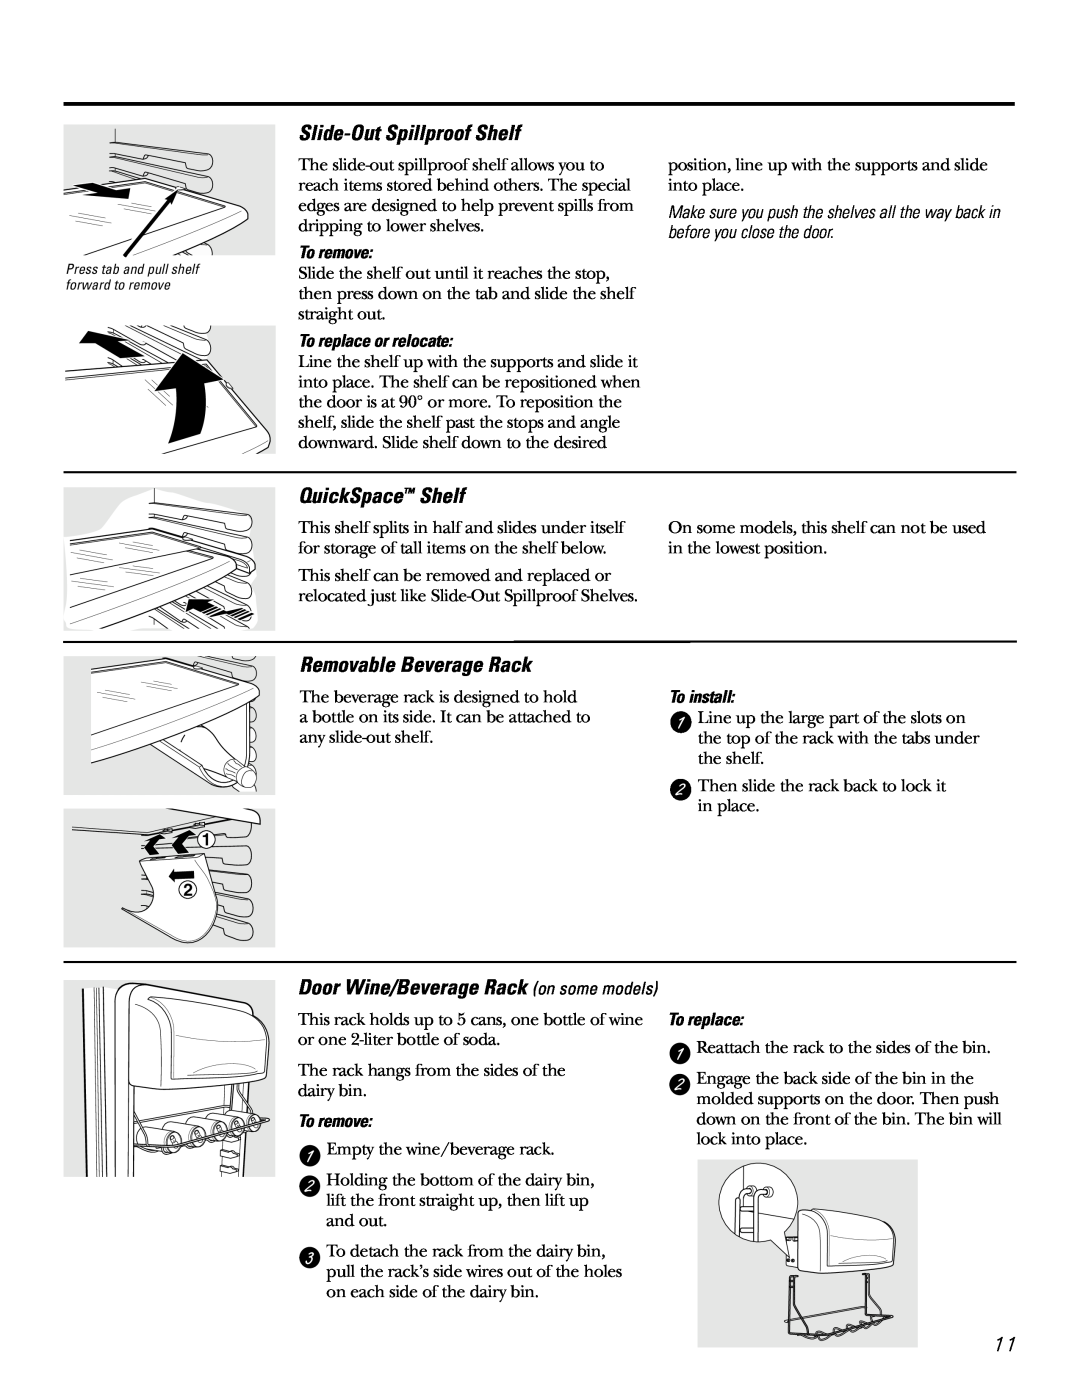 GE 21, 23, 25, 27, 29 installation instructions Slide-Out Spillproof Shelf, QuickSpace Shelf, Removable Beverage Rack 